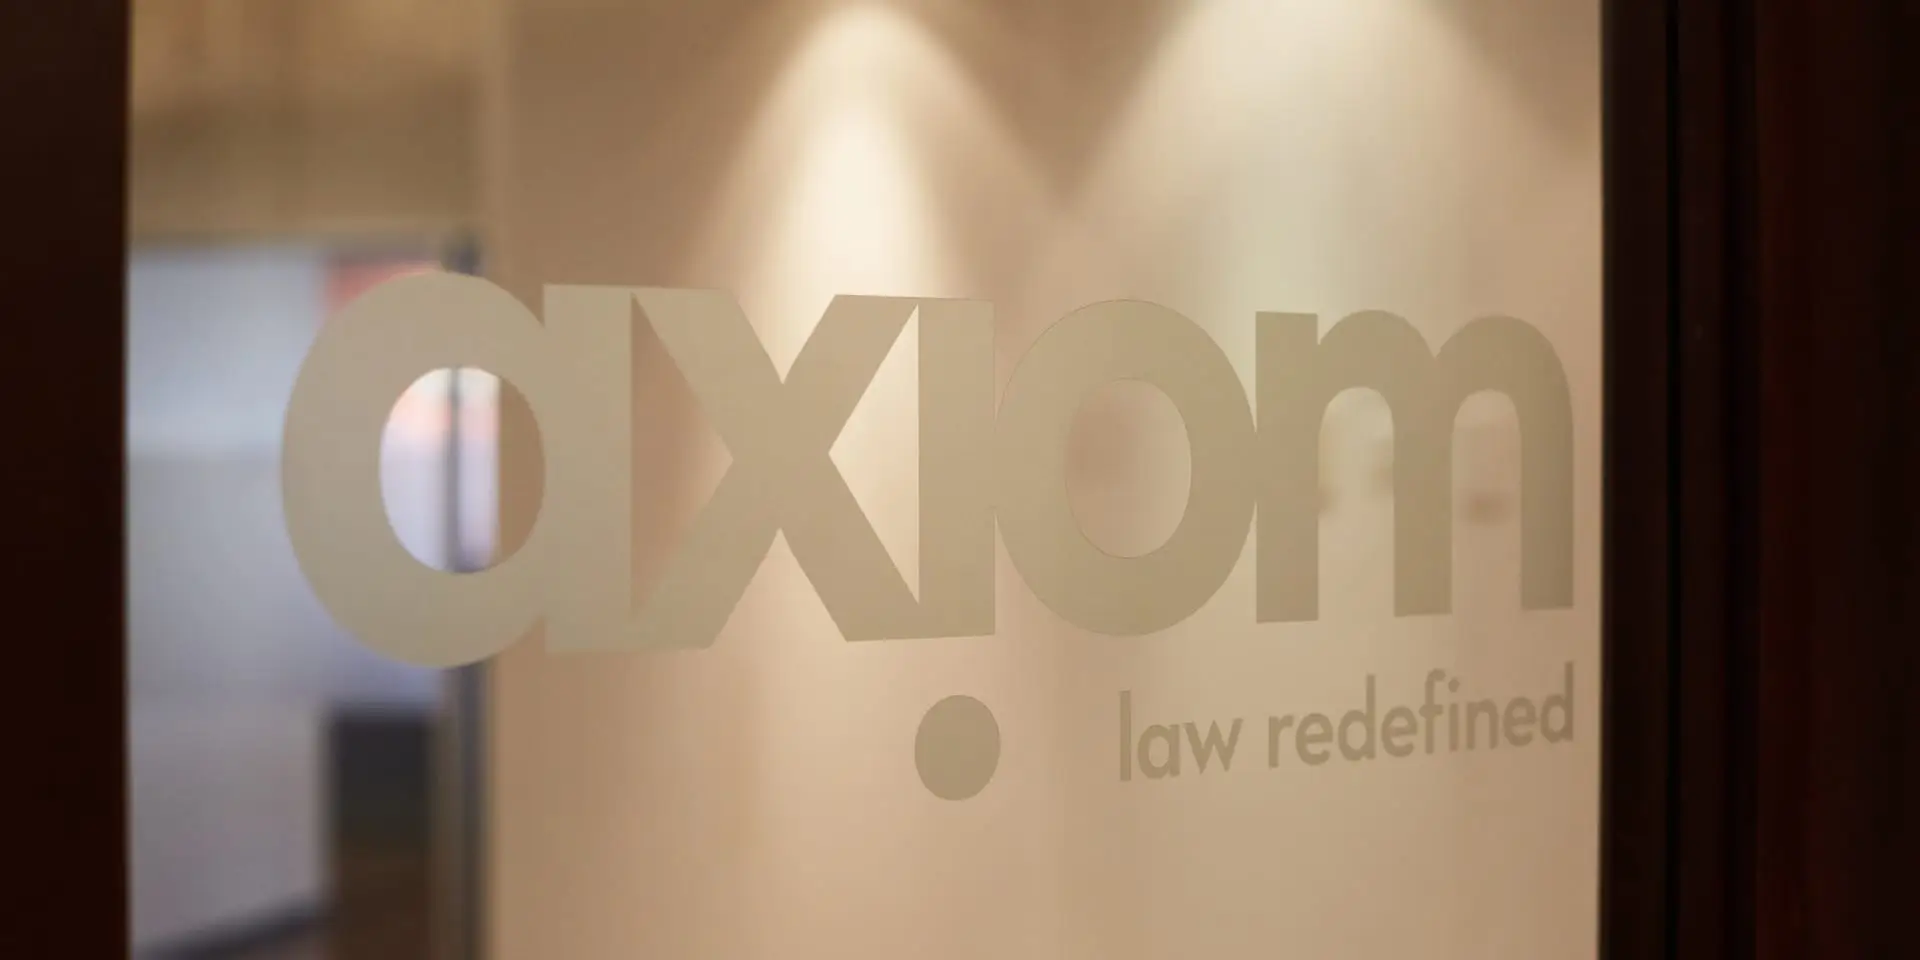 Axiom logo engraved in a glass door.